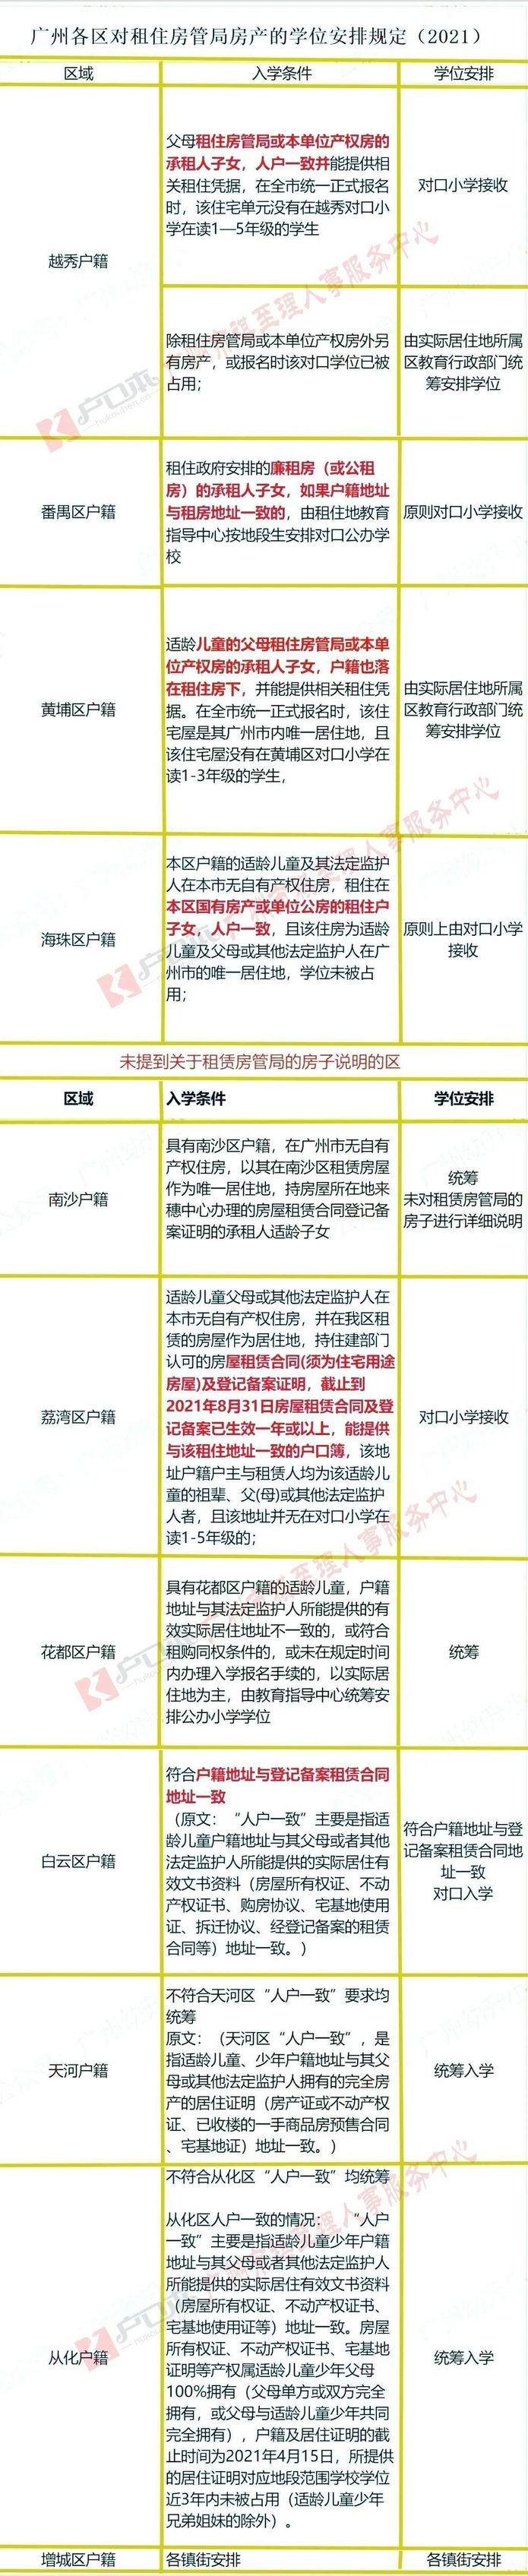 广州公租房申请条件及流程（2022年广州市公租房最新消息）